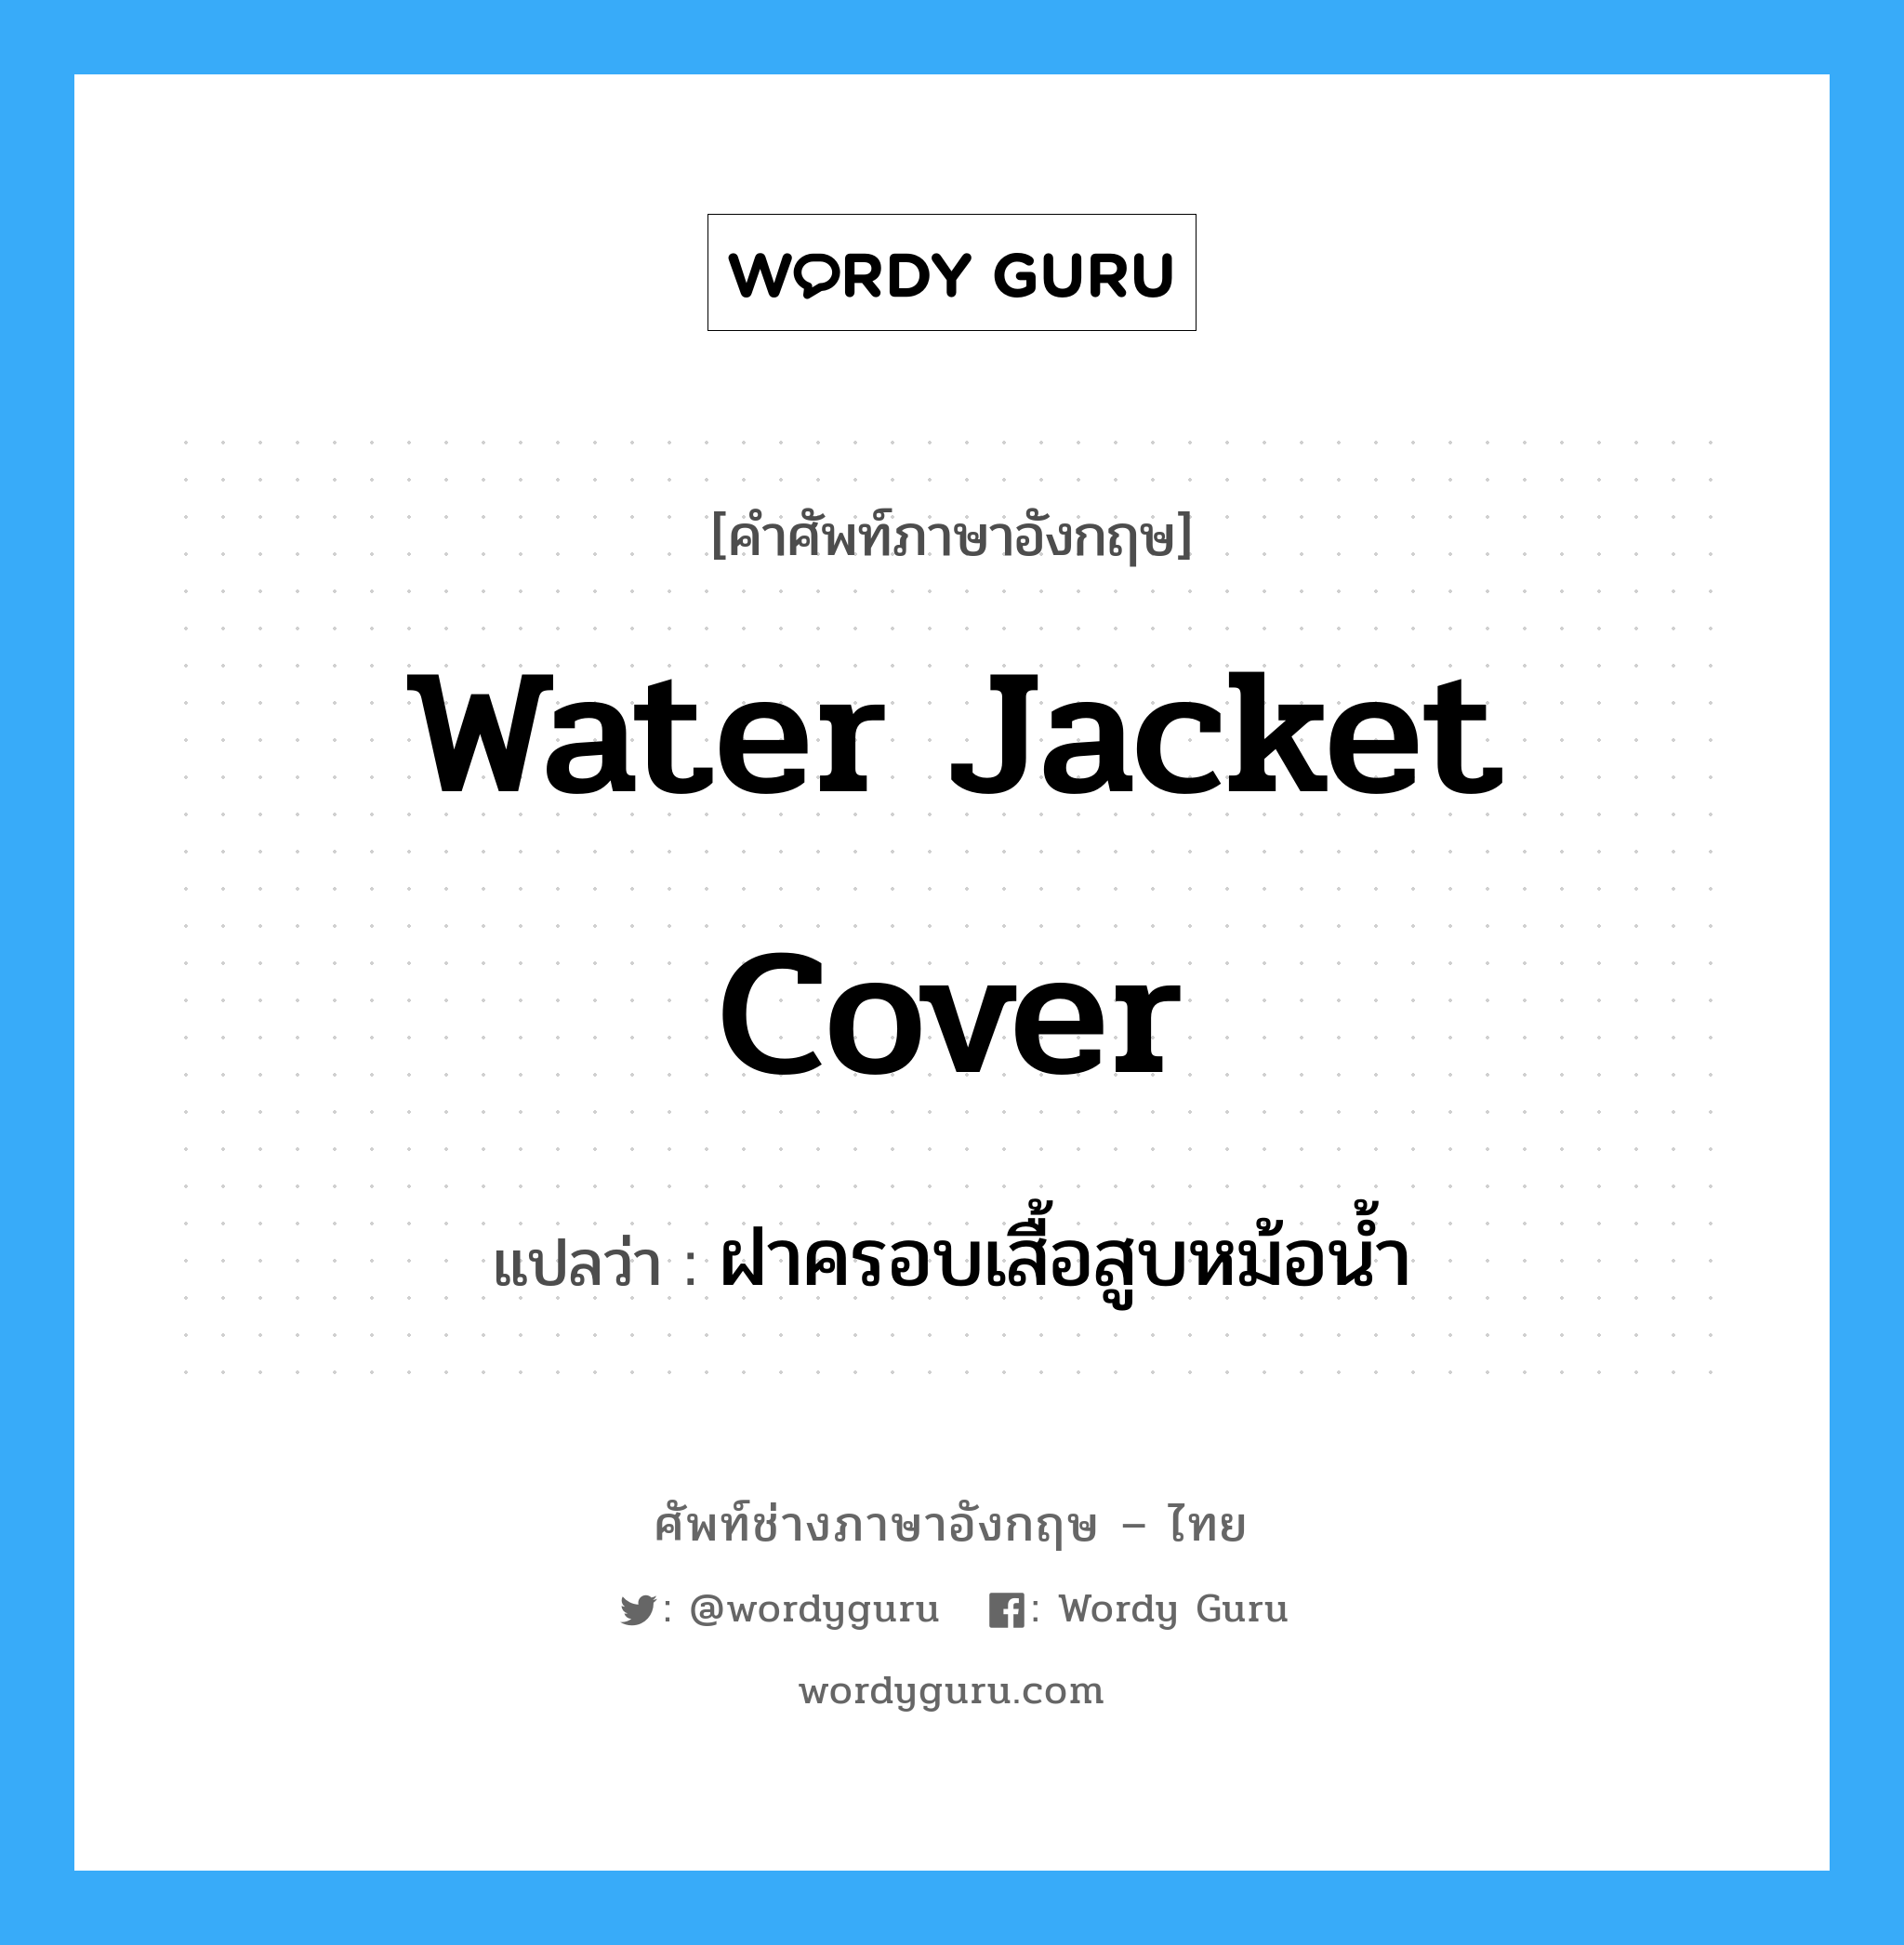 water jacket cover แปลว่า?, คำศัพท์ช่างภาษาอังกฤษ - ไทย water jacket cover คำศัพท์ภาษาอังกฤษ water jacket cover แปลว่า ฝาครอบเสื้อสูบหม้อน้ำ